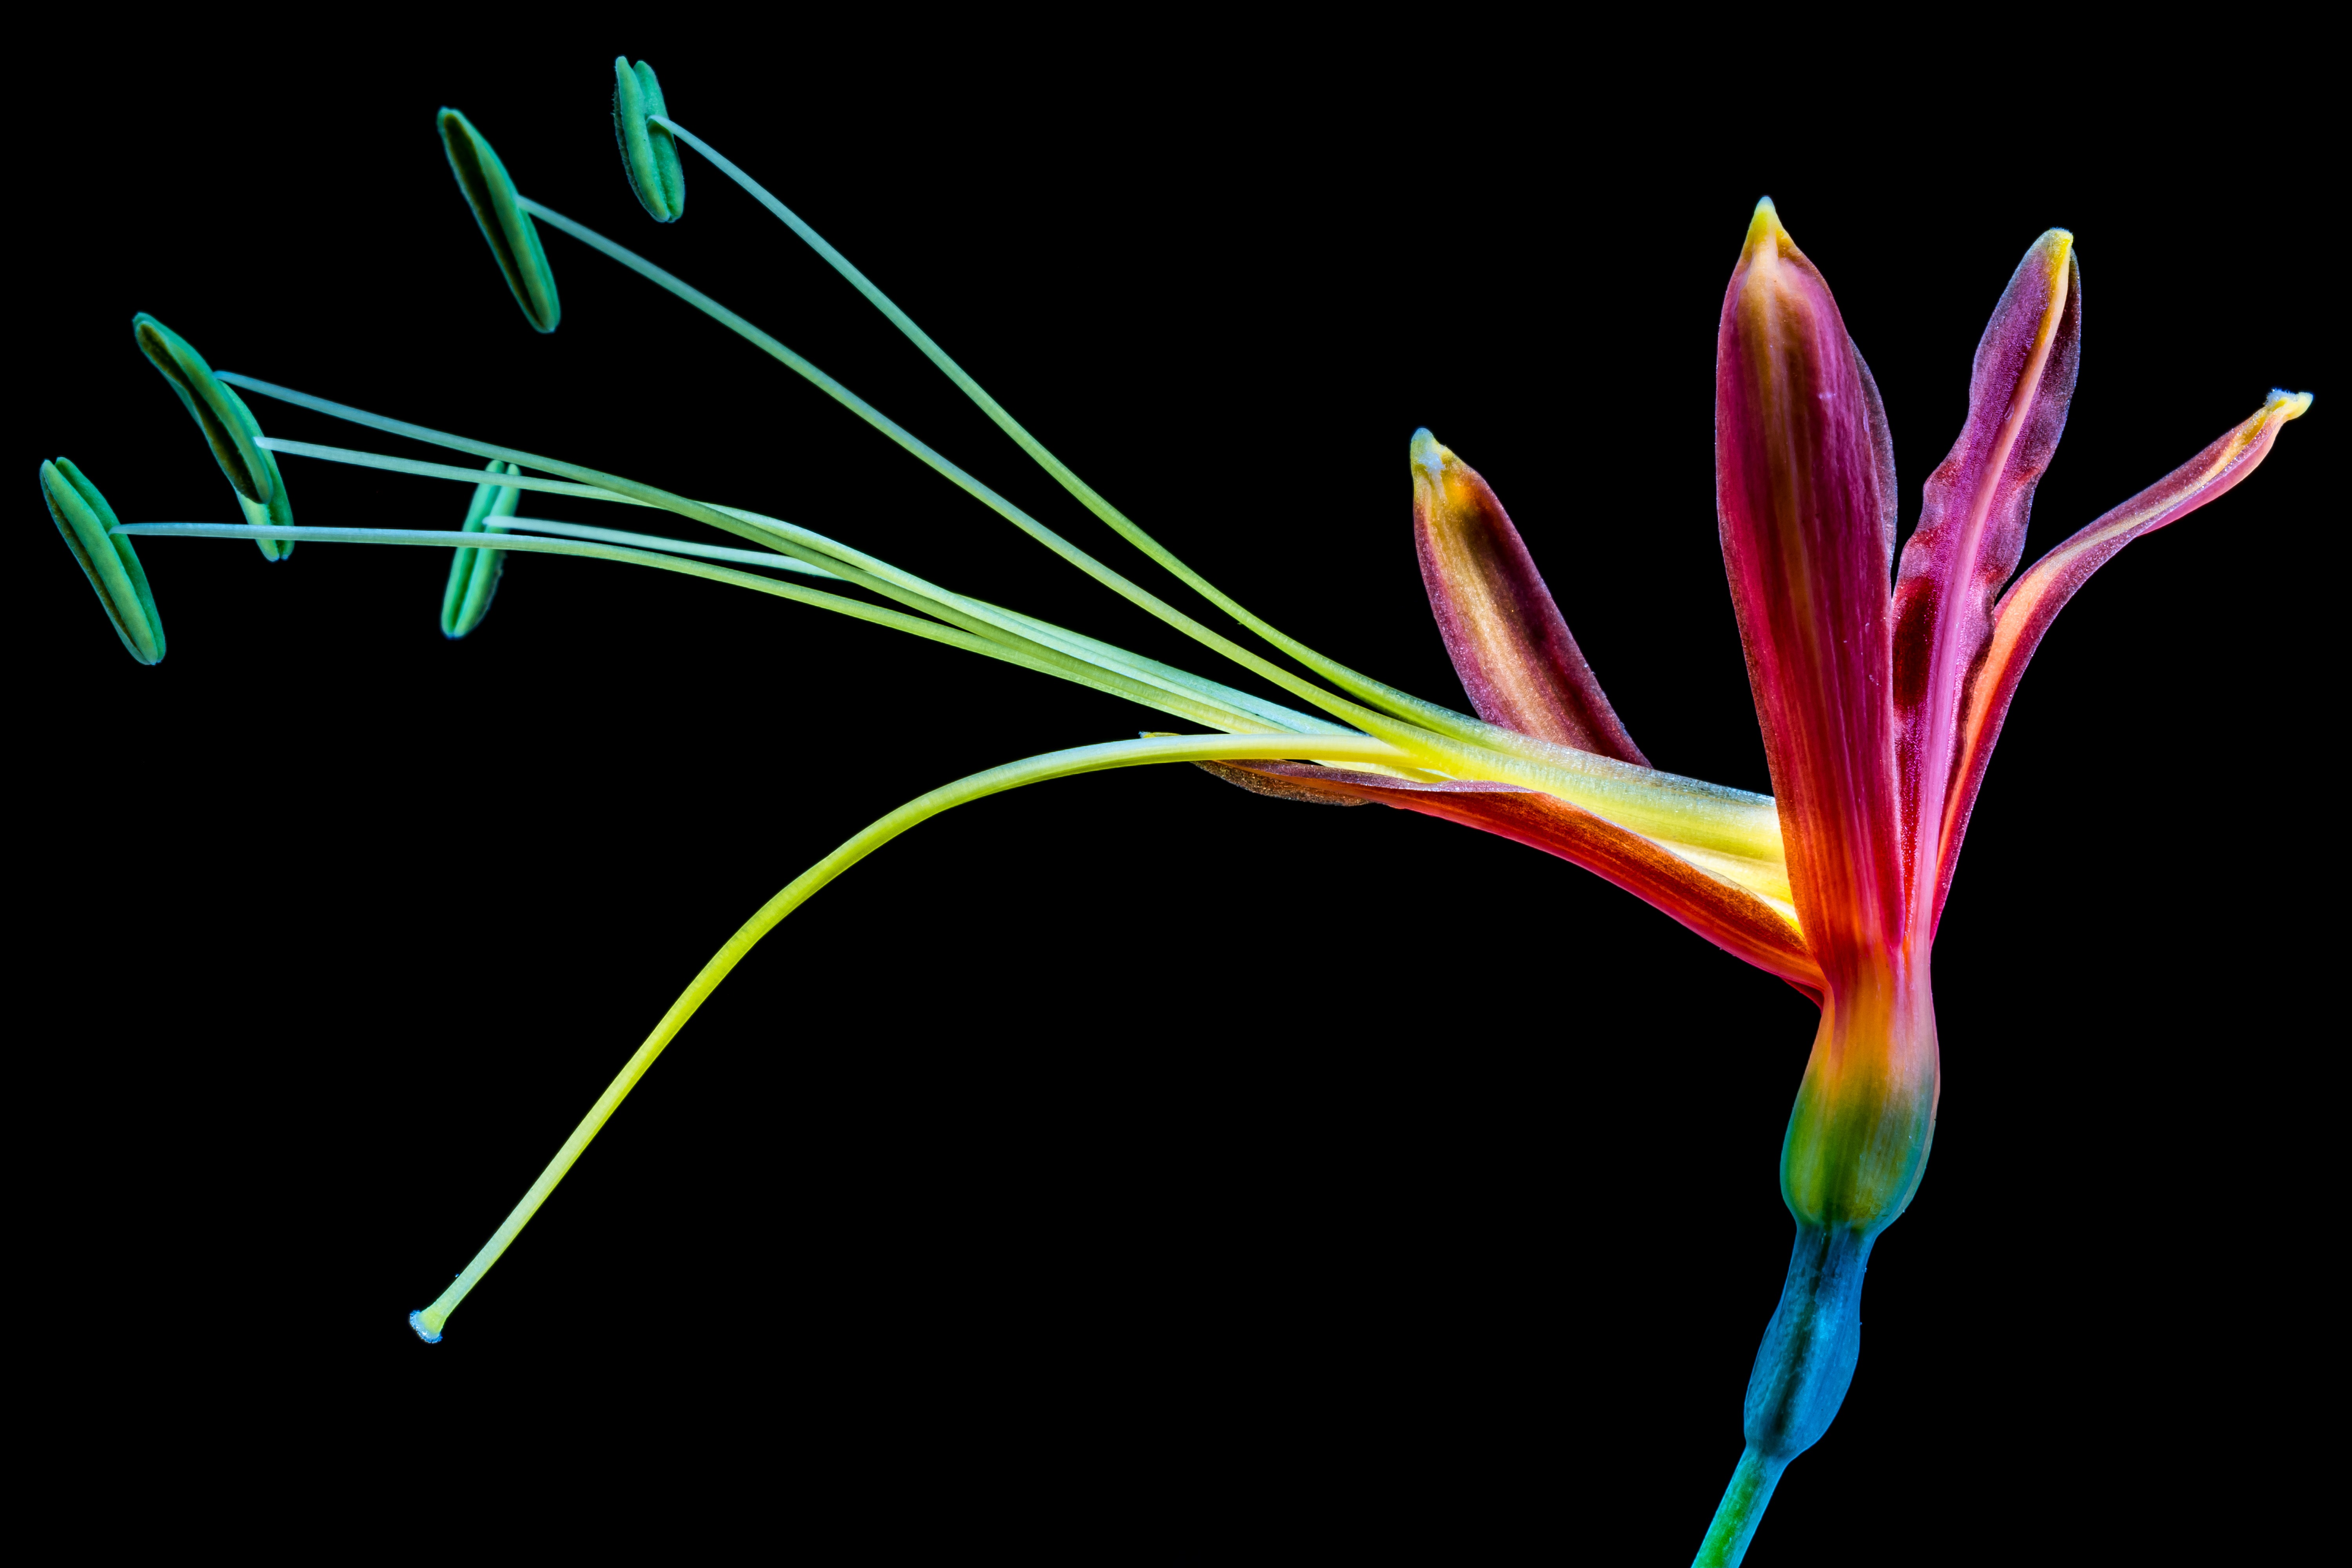 An unusual rainbow flower